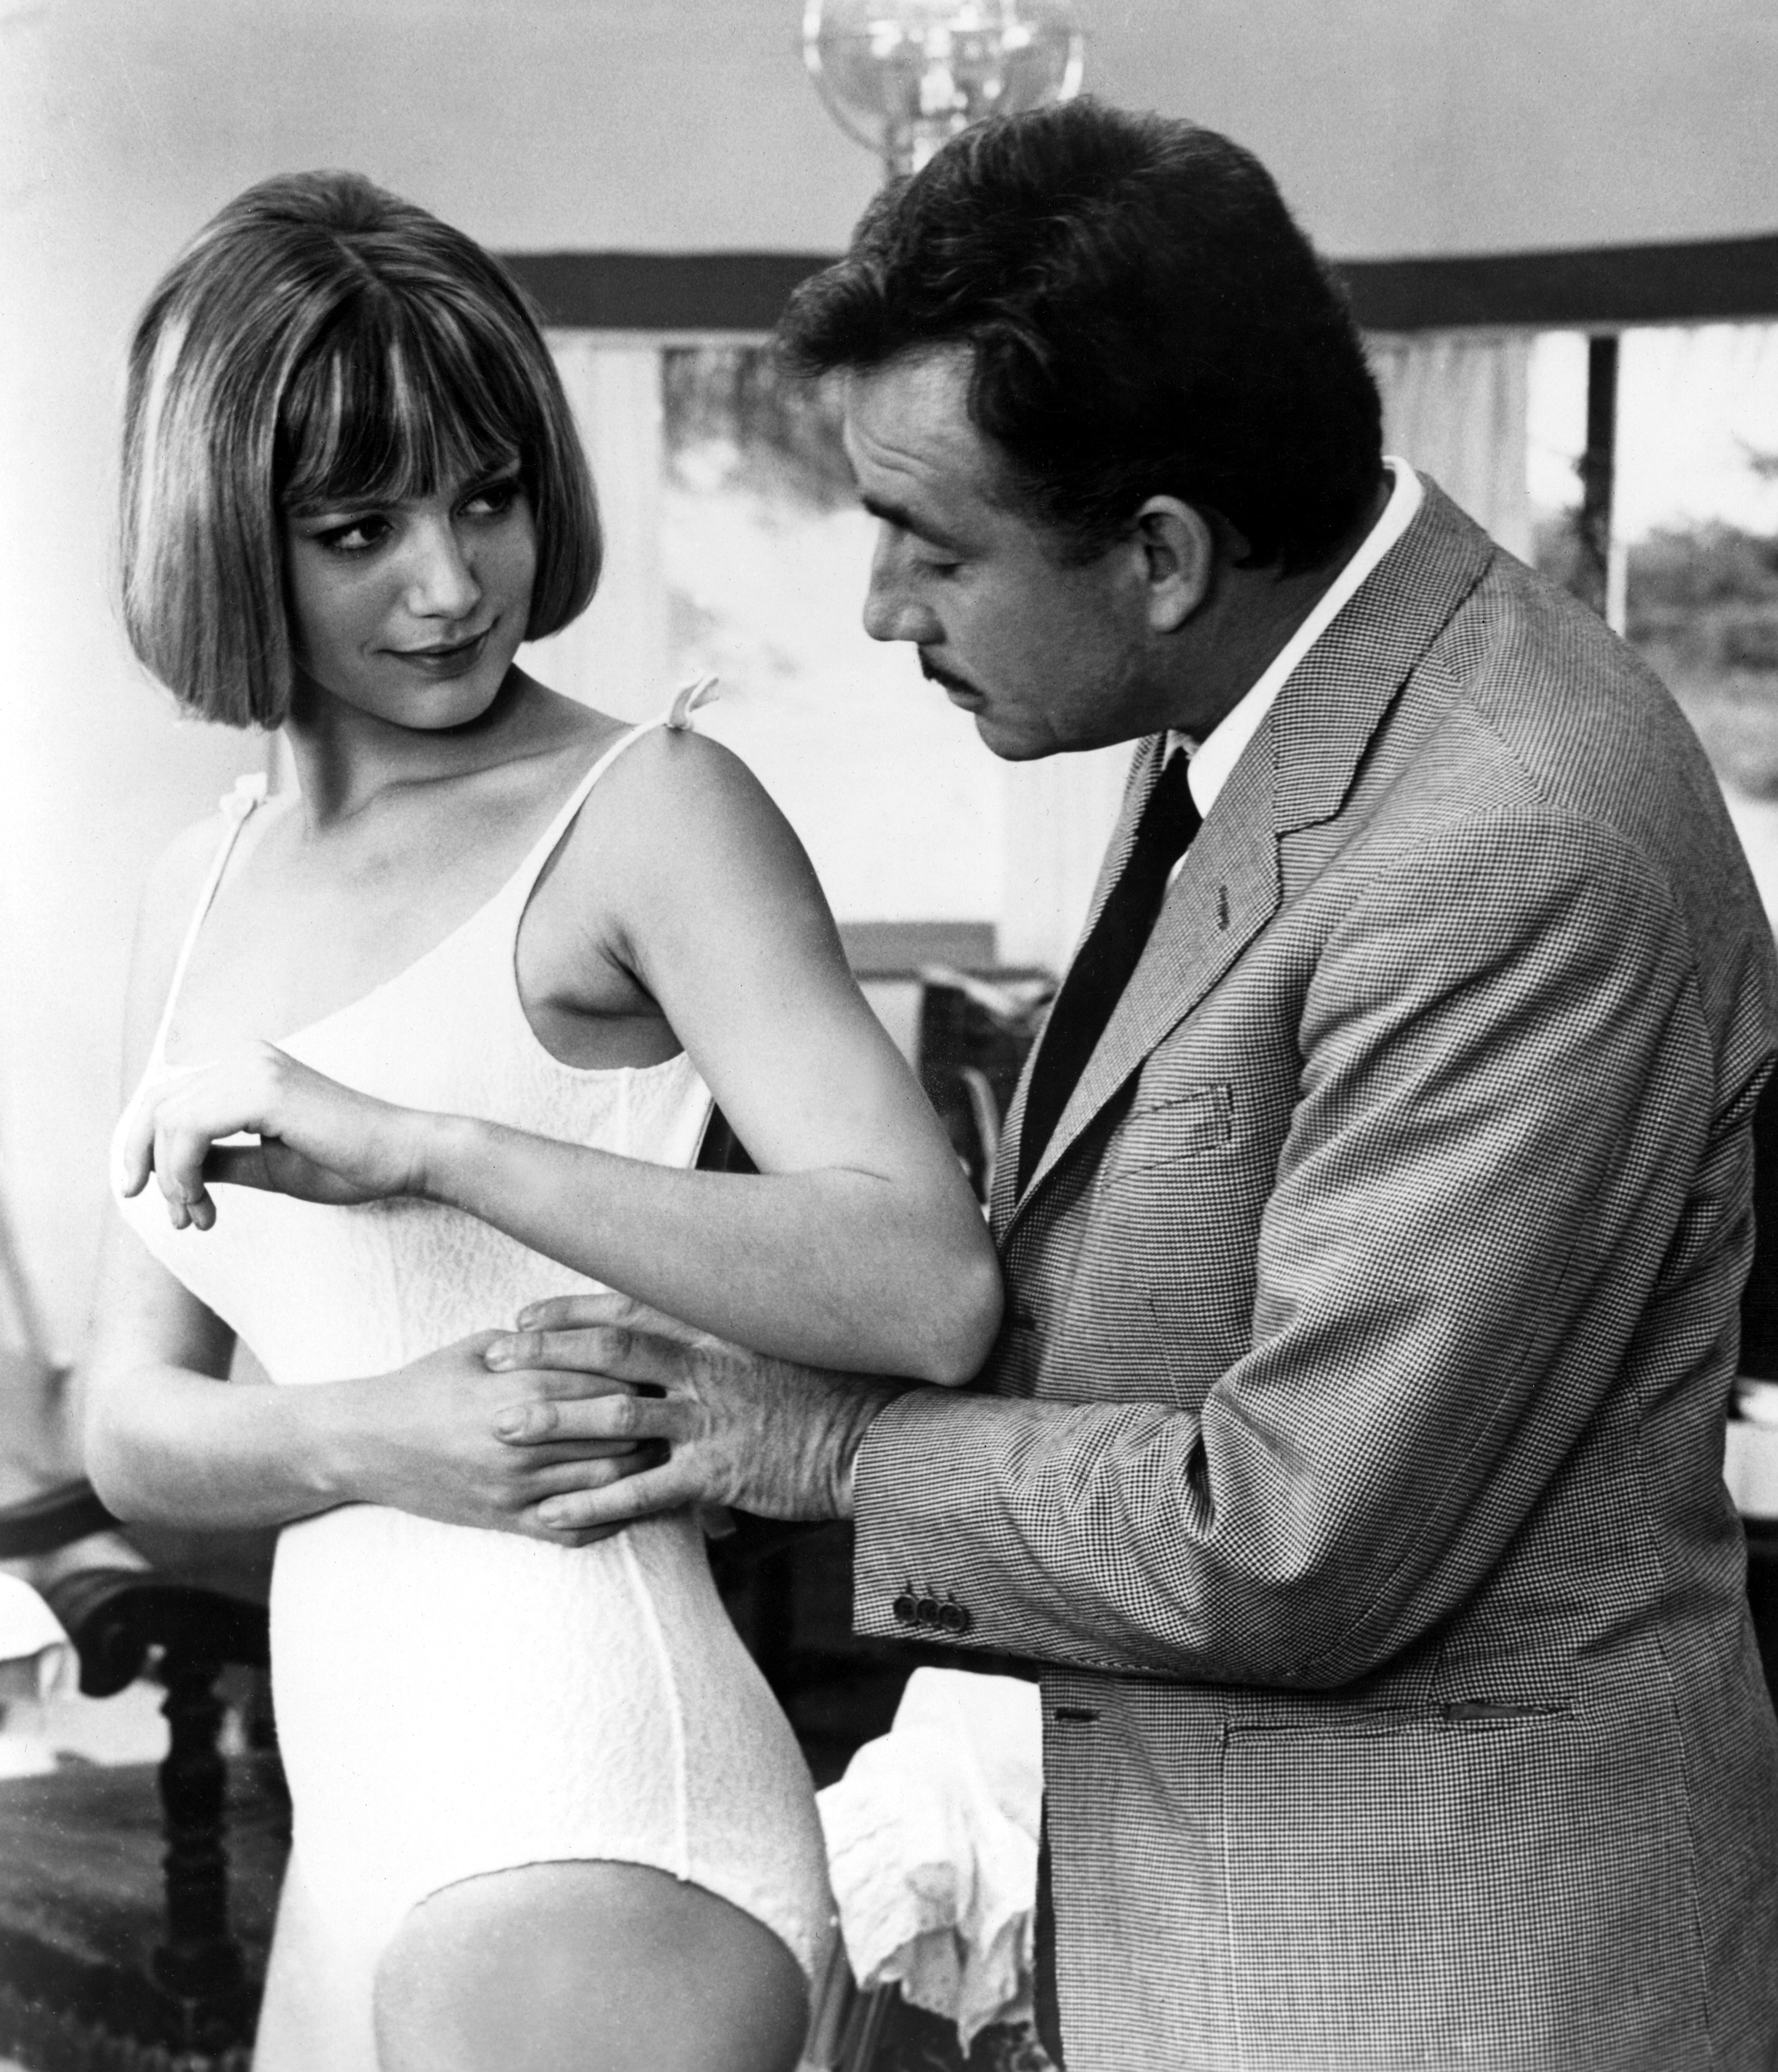 La voglia matta, 1962. Tognazzi con Catherine Spaak. 1962